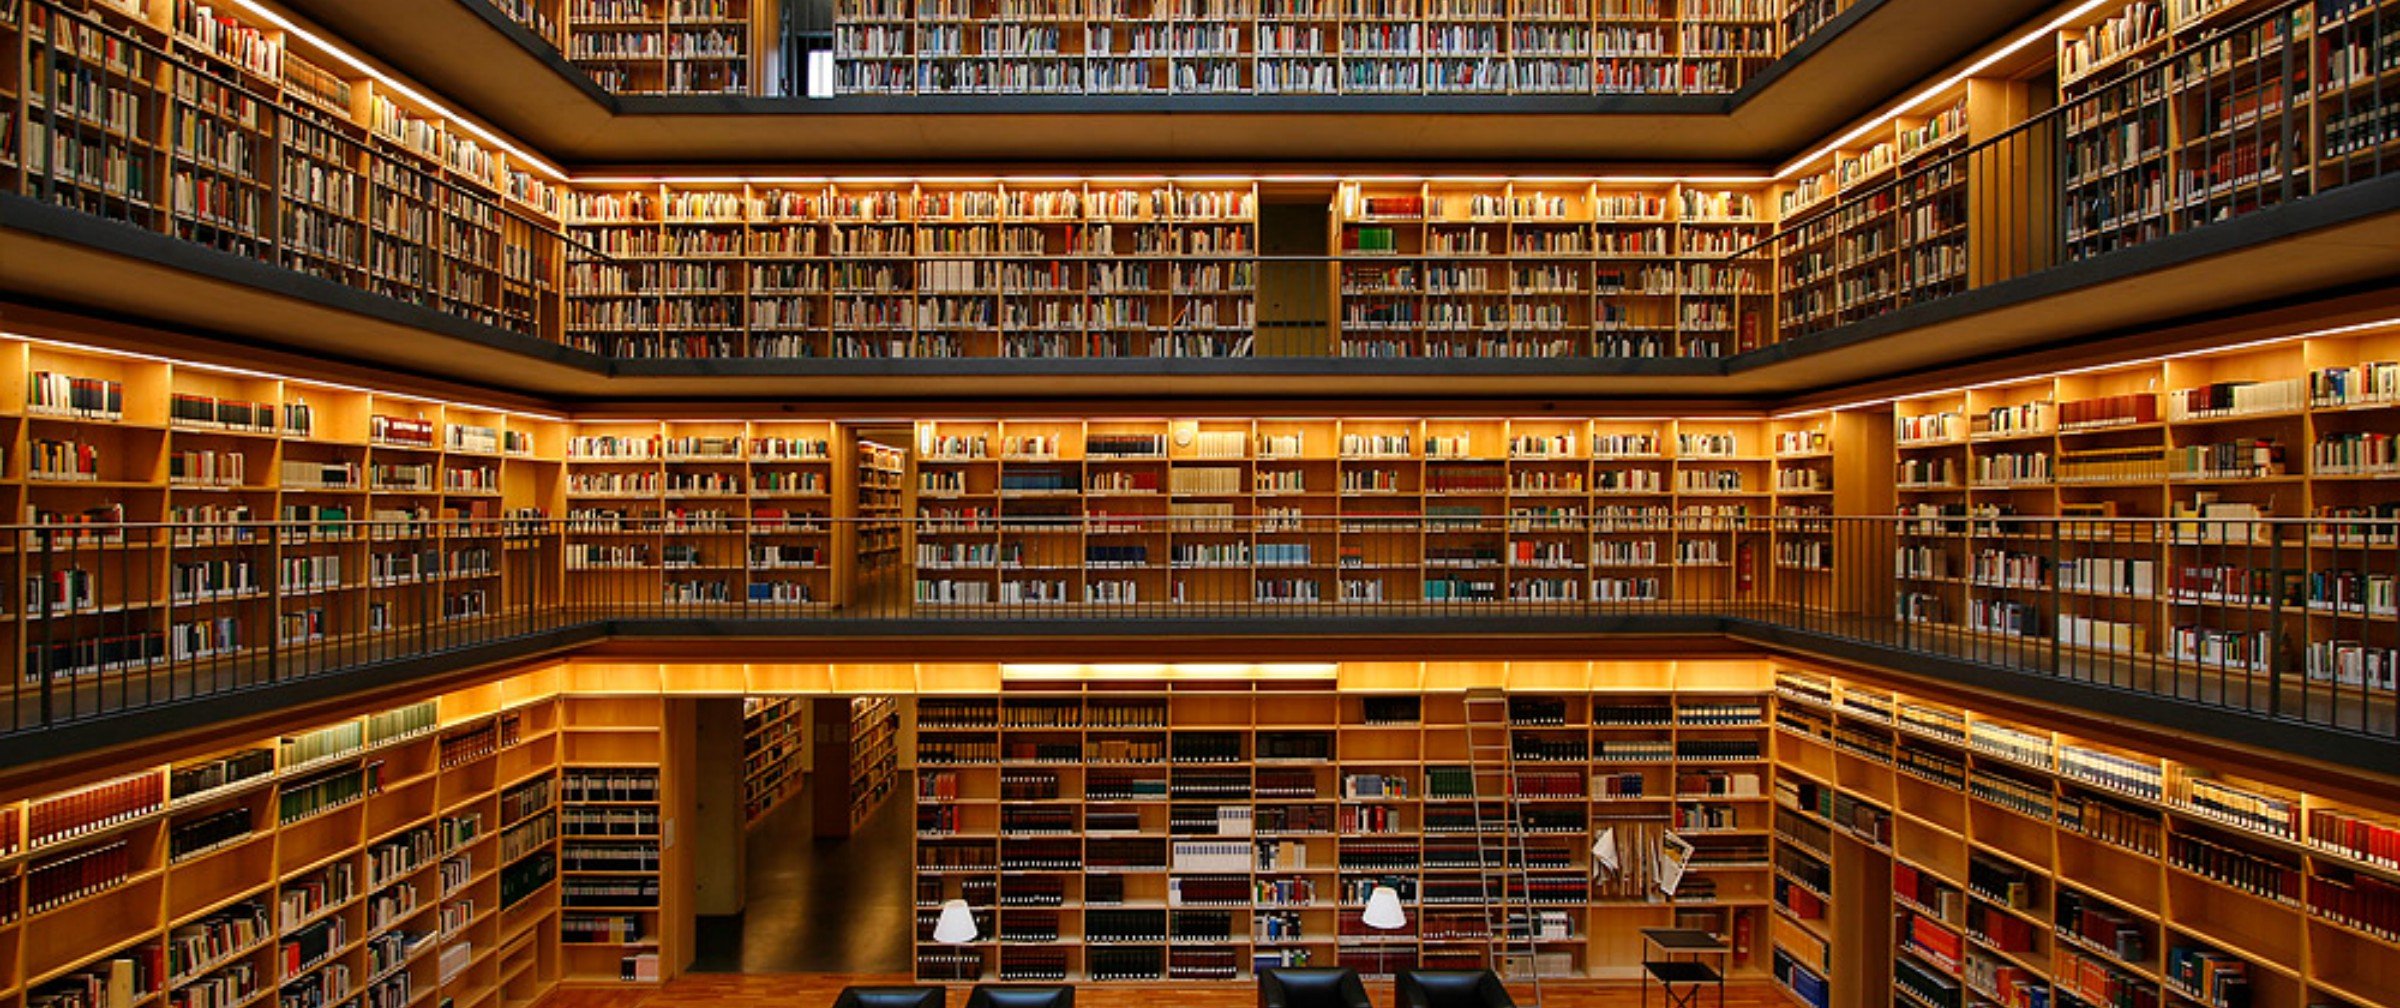 Отыщите место со множеством книг. 19-Ярусное книгохранилище РГБ. Библиотека Phillips Exeter. Красивая библиотека. Большая библиотека.